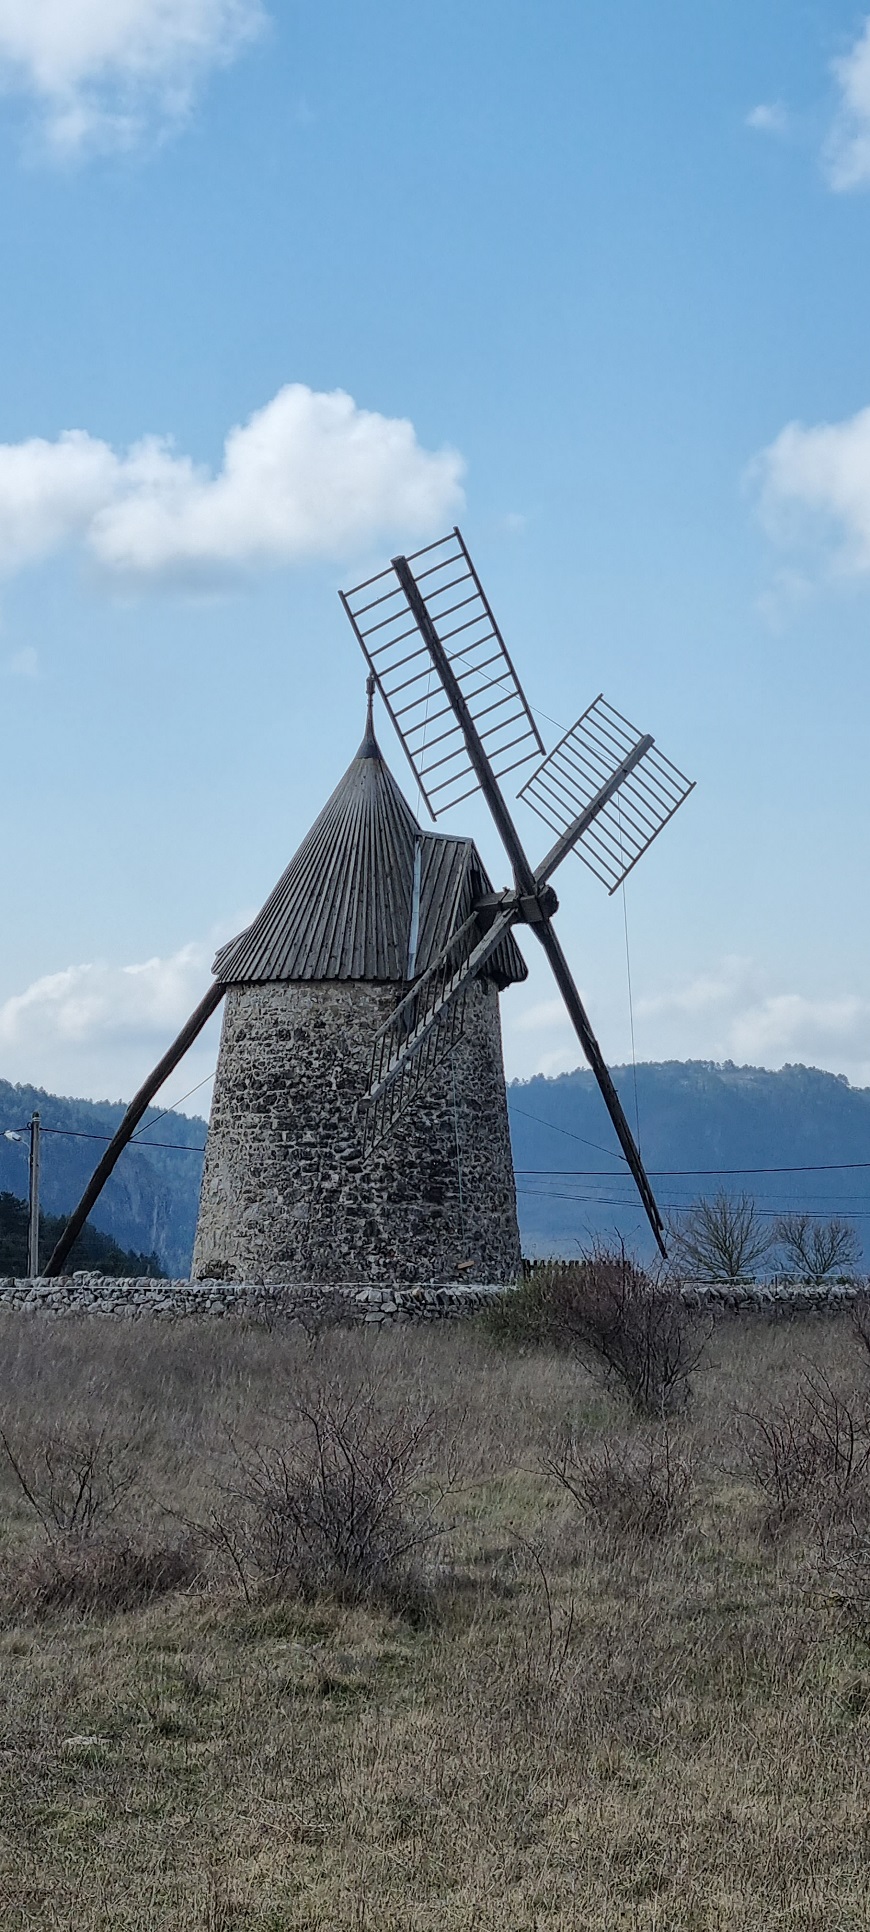 Moulin meunier de St-Pierre-de-le-Fage